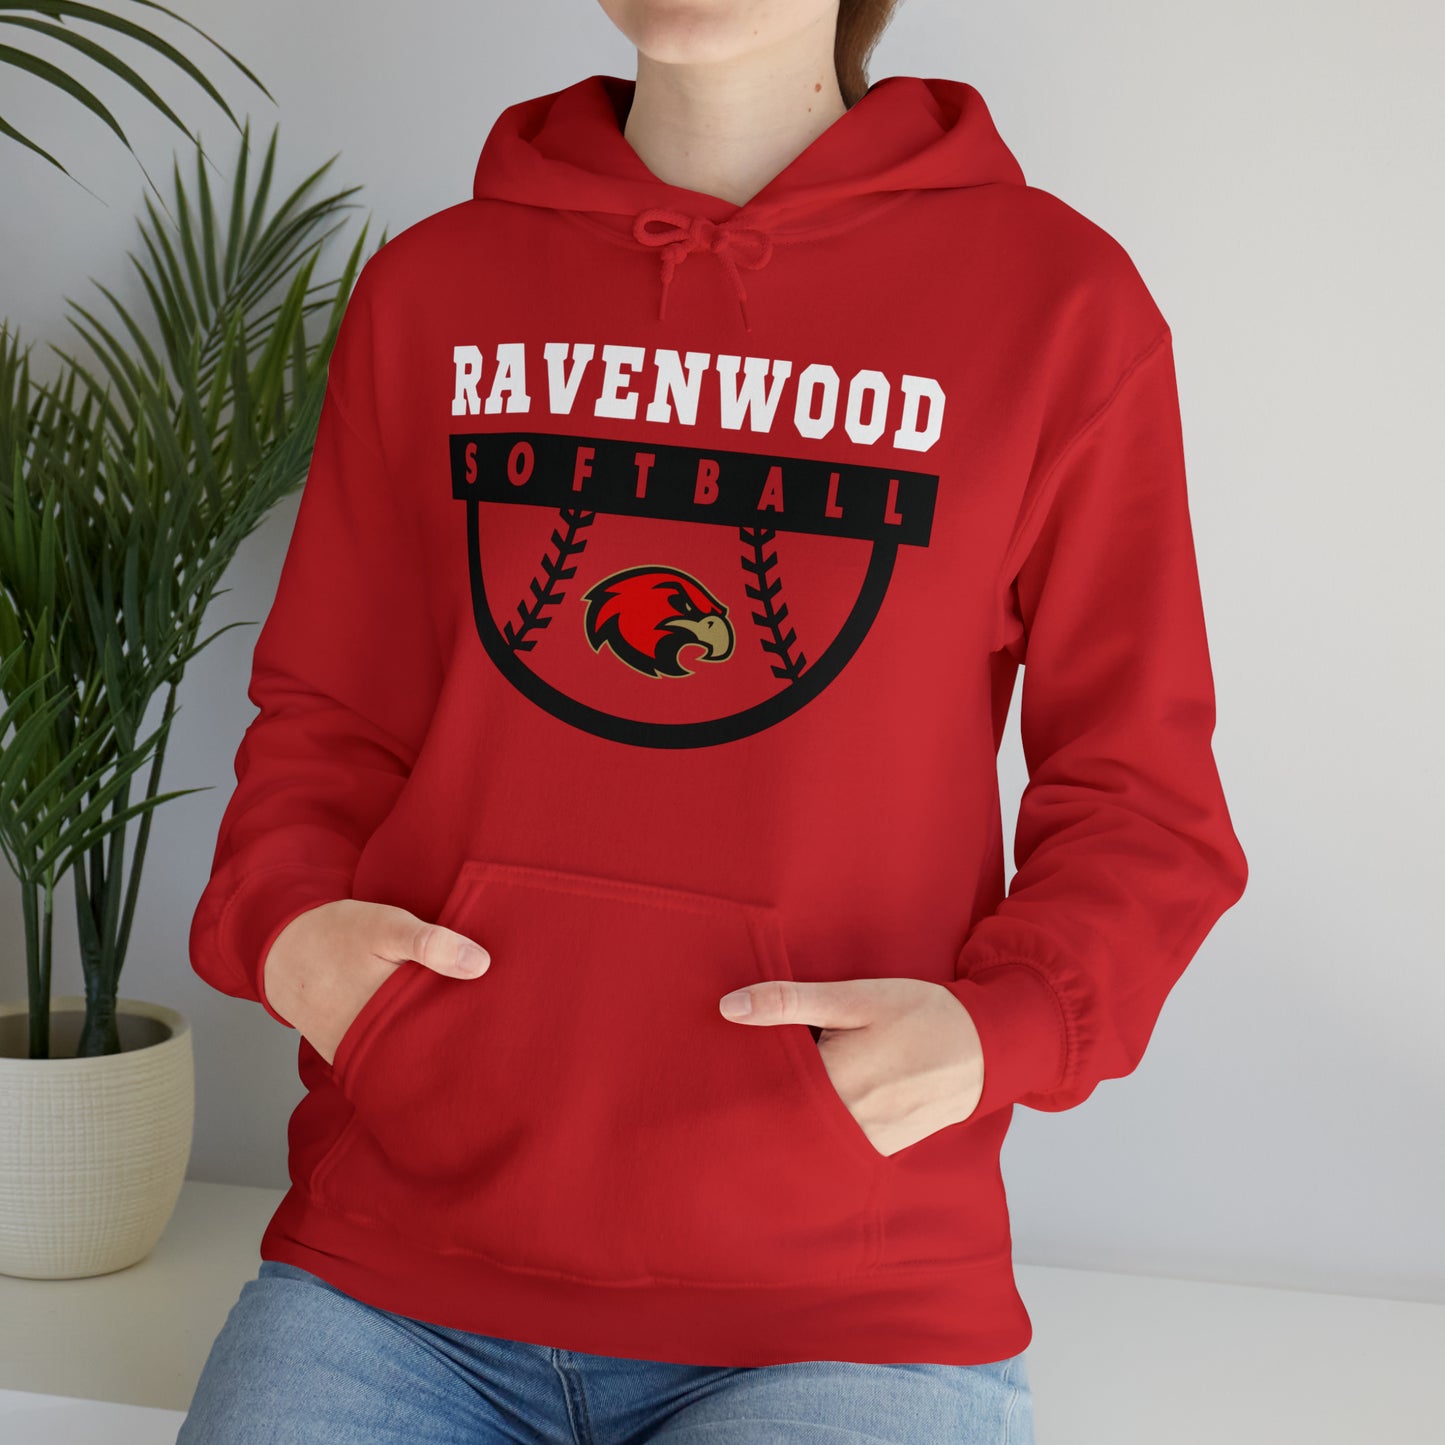 Ravenwood Softball Hoodie